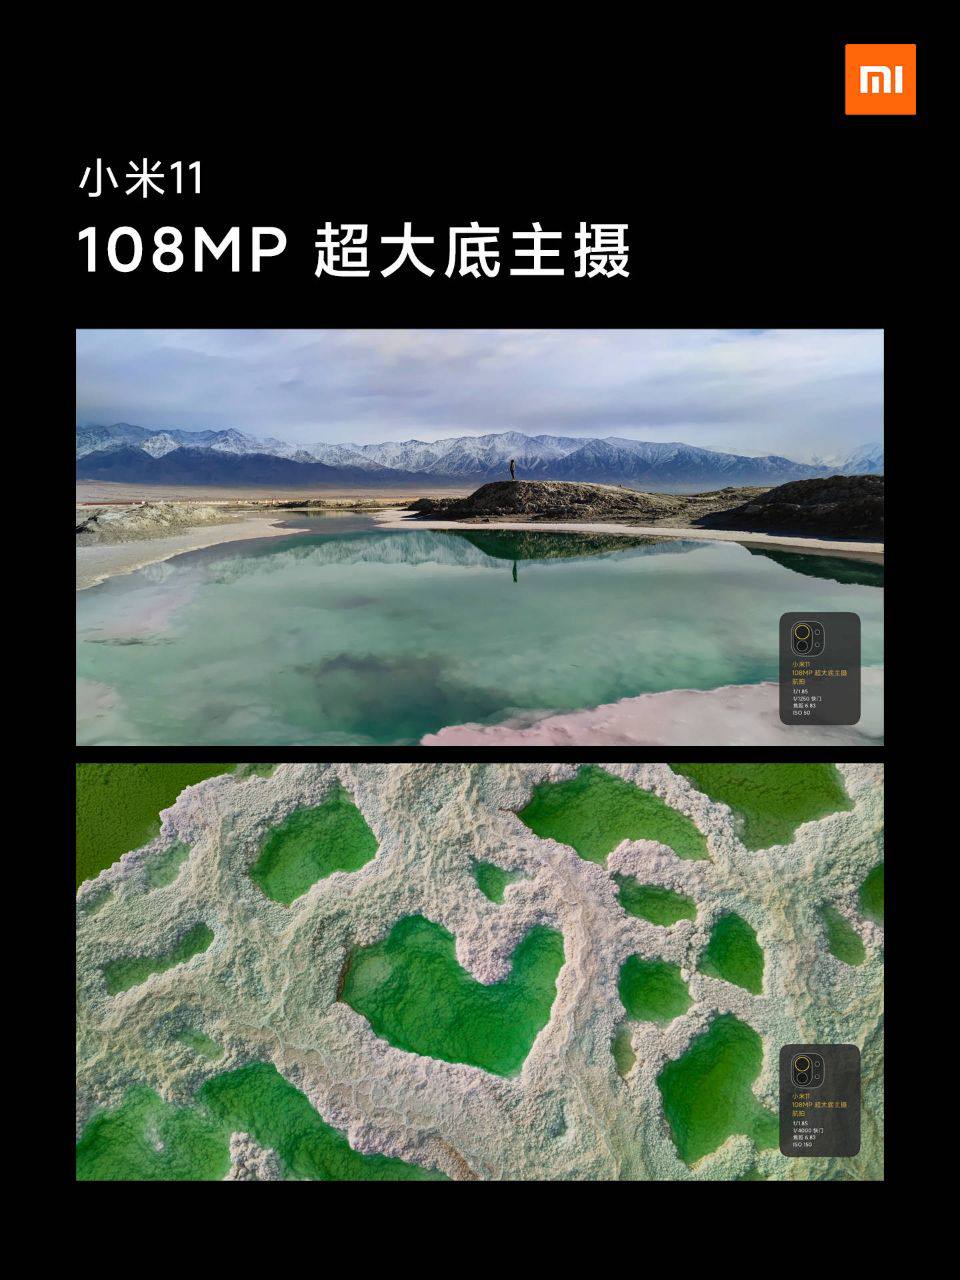 تصاویر گرفته شده با دوربین 108 مگاپیکسلی گوشی شیائومی Mi 11